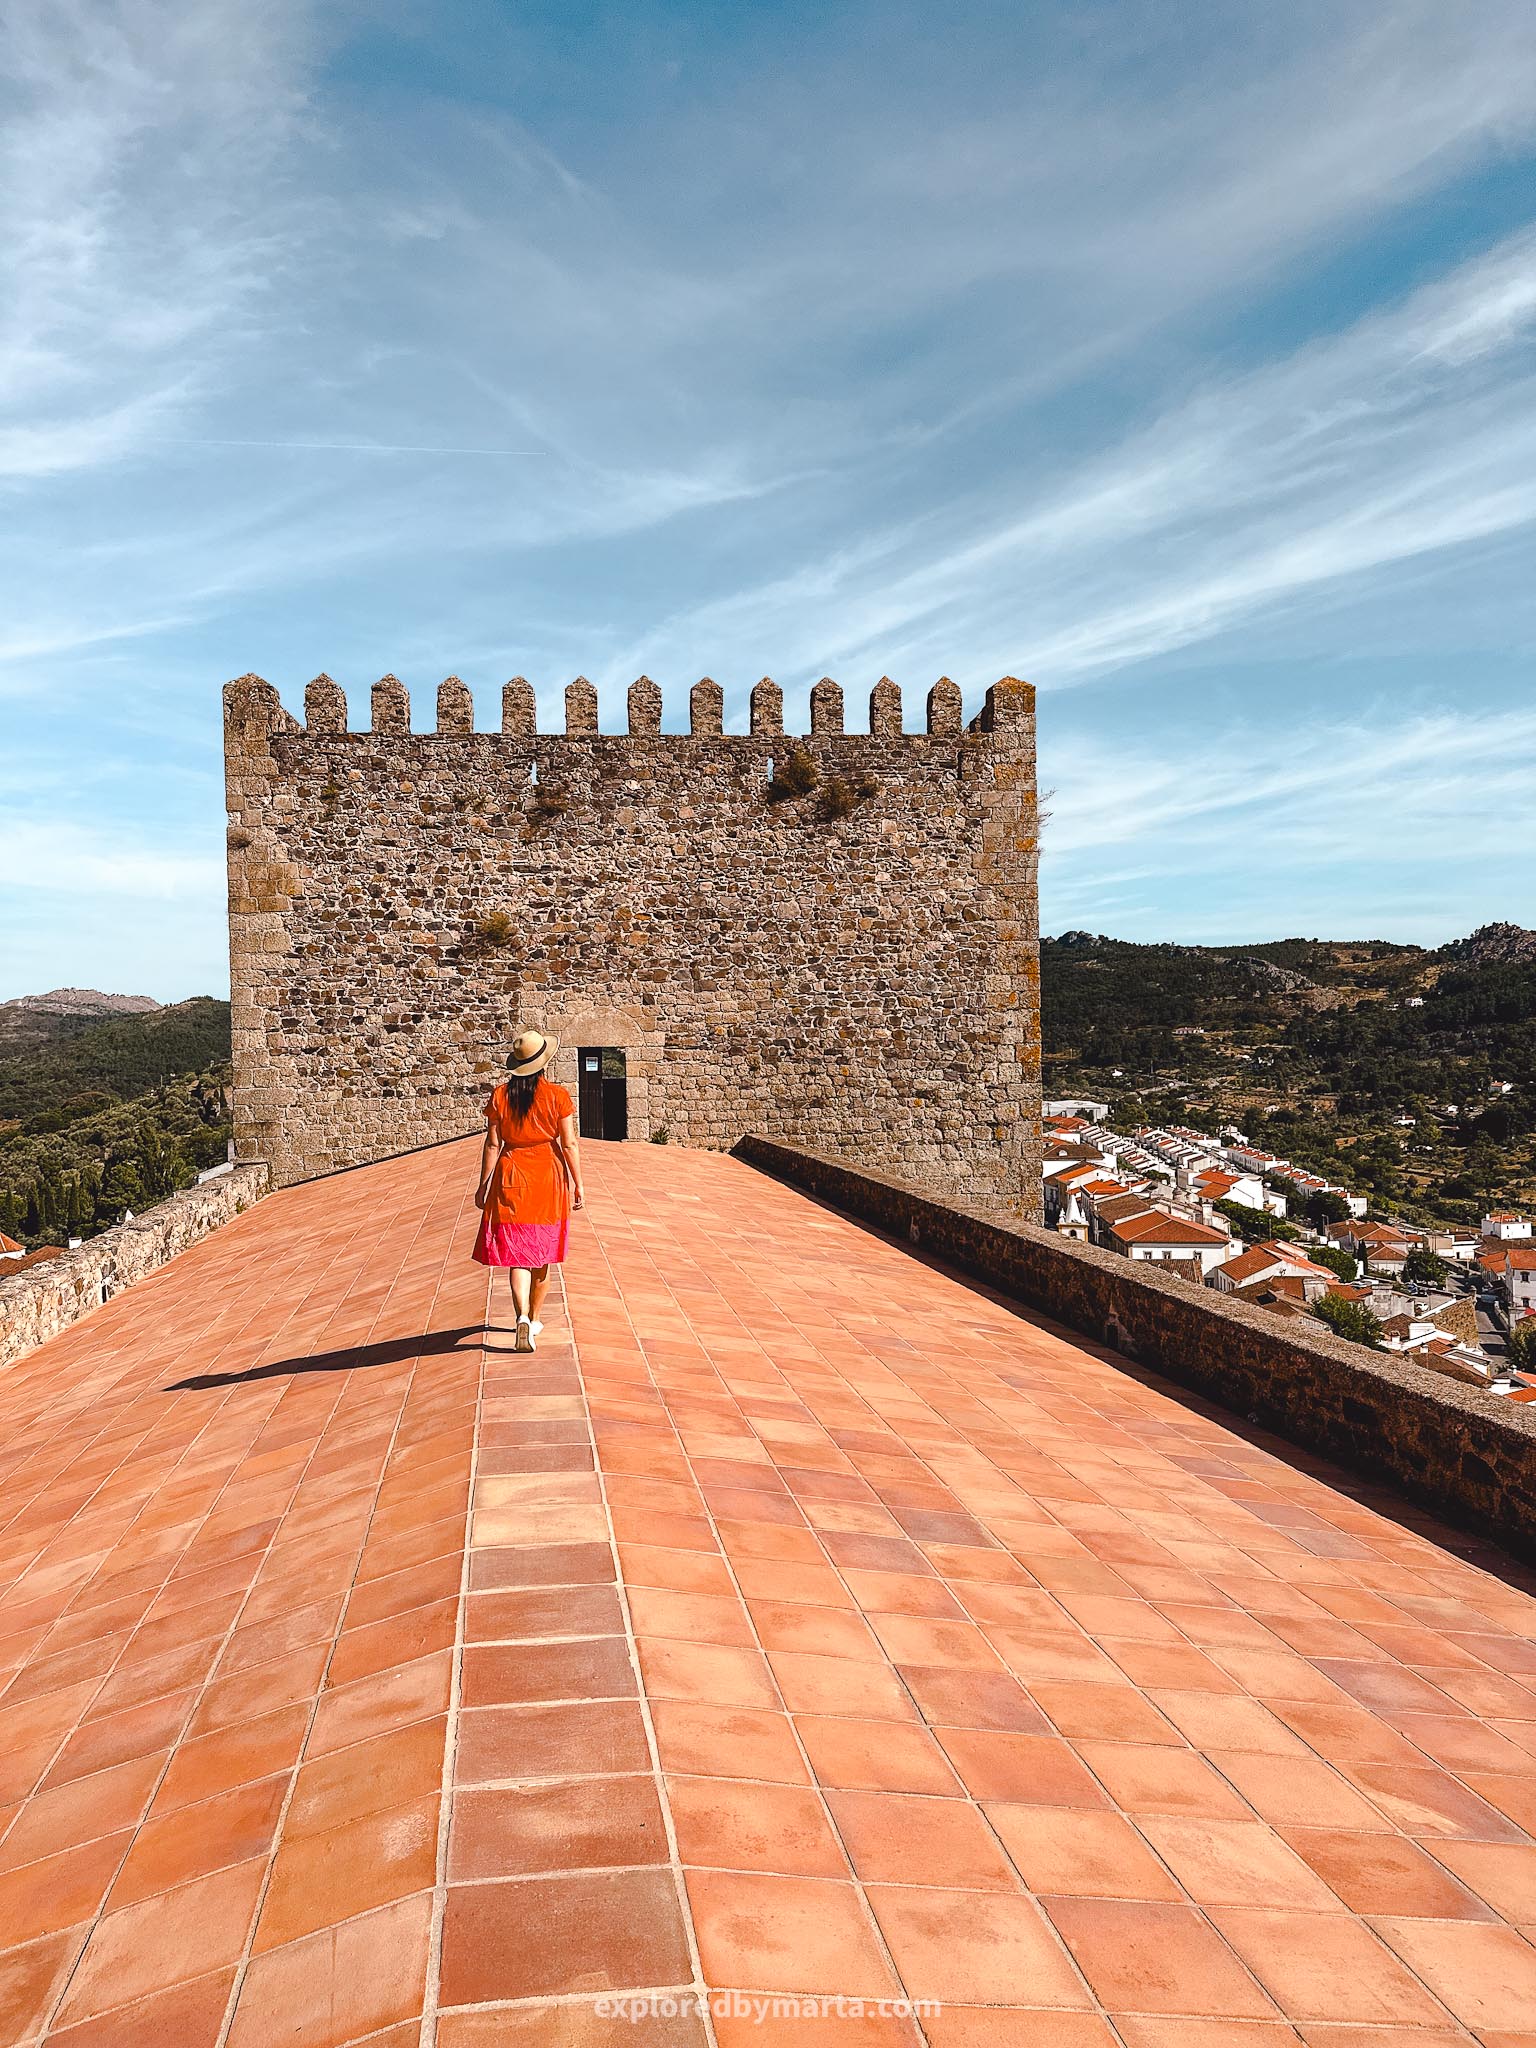 Medieval castle of Castelo de Vide - Sintra of Alentejo